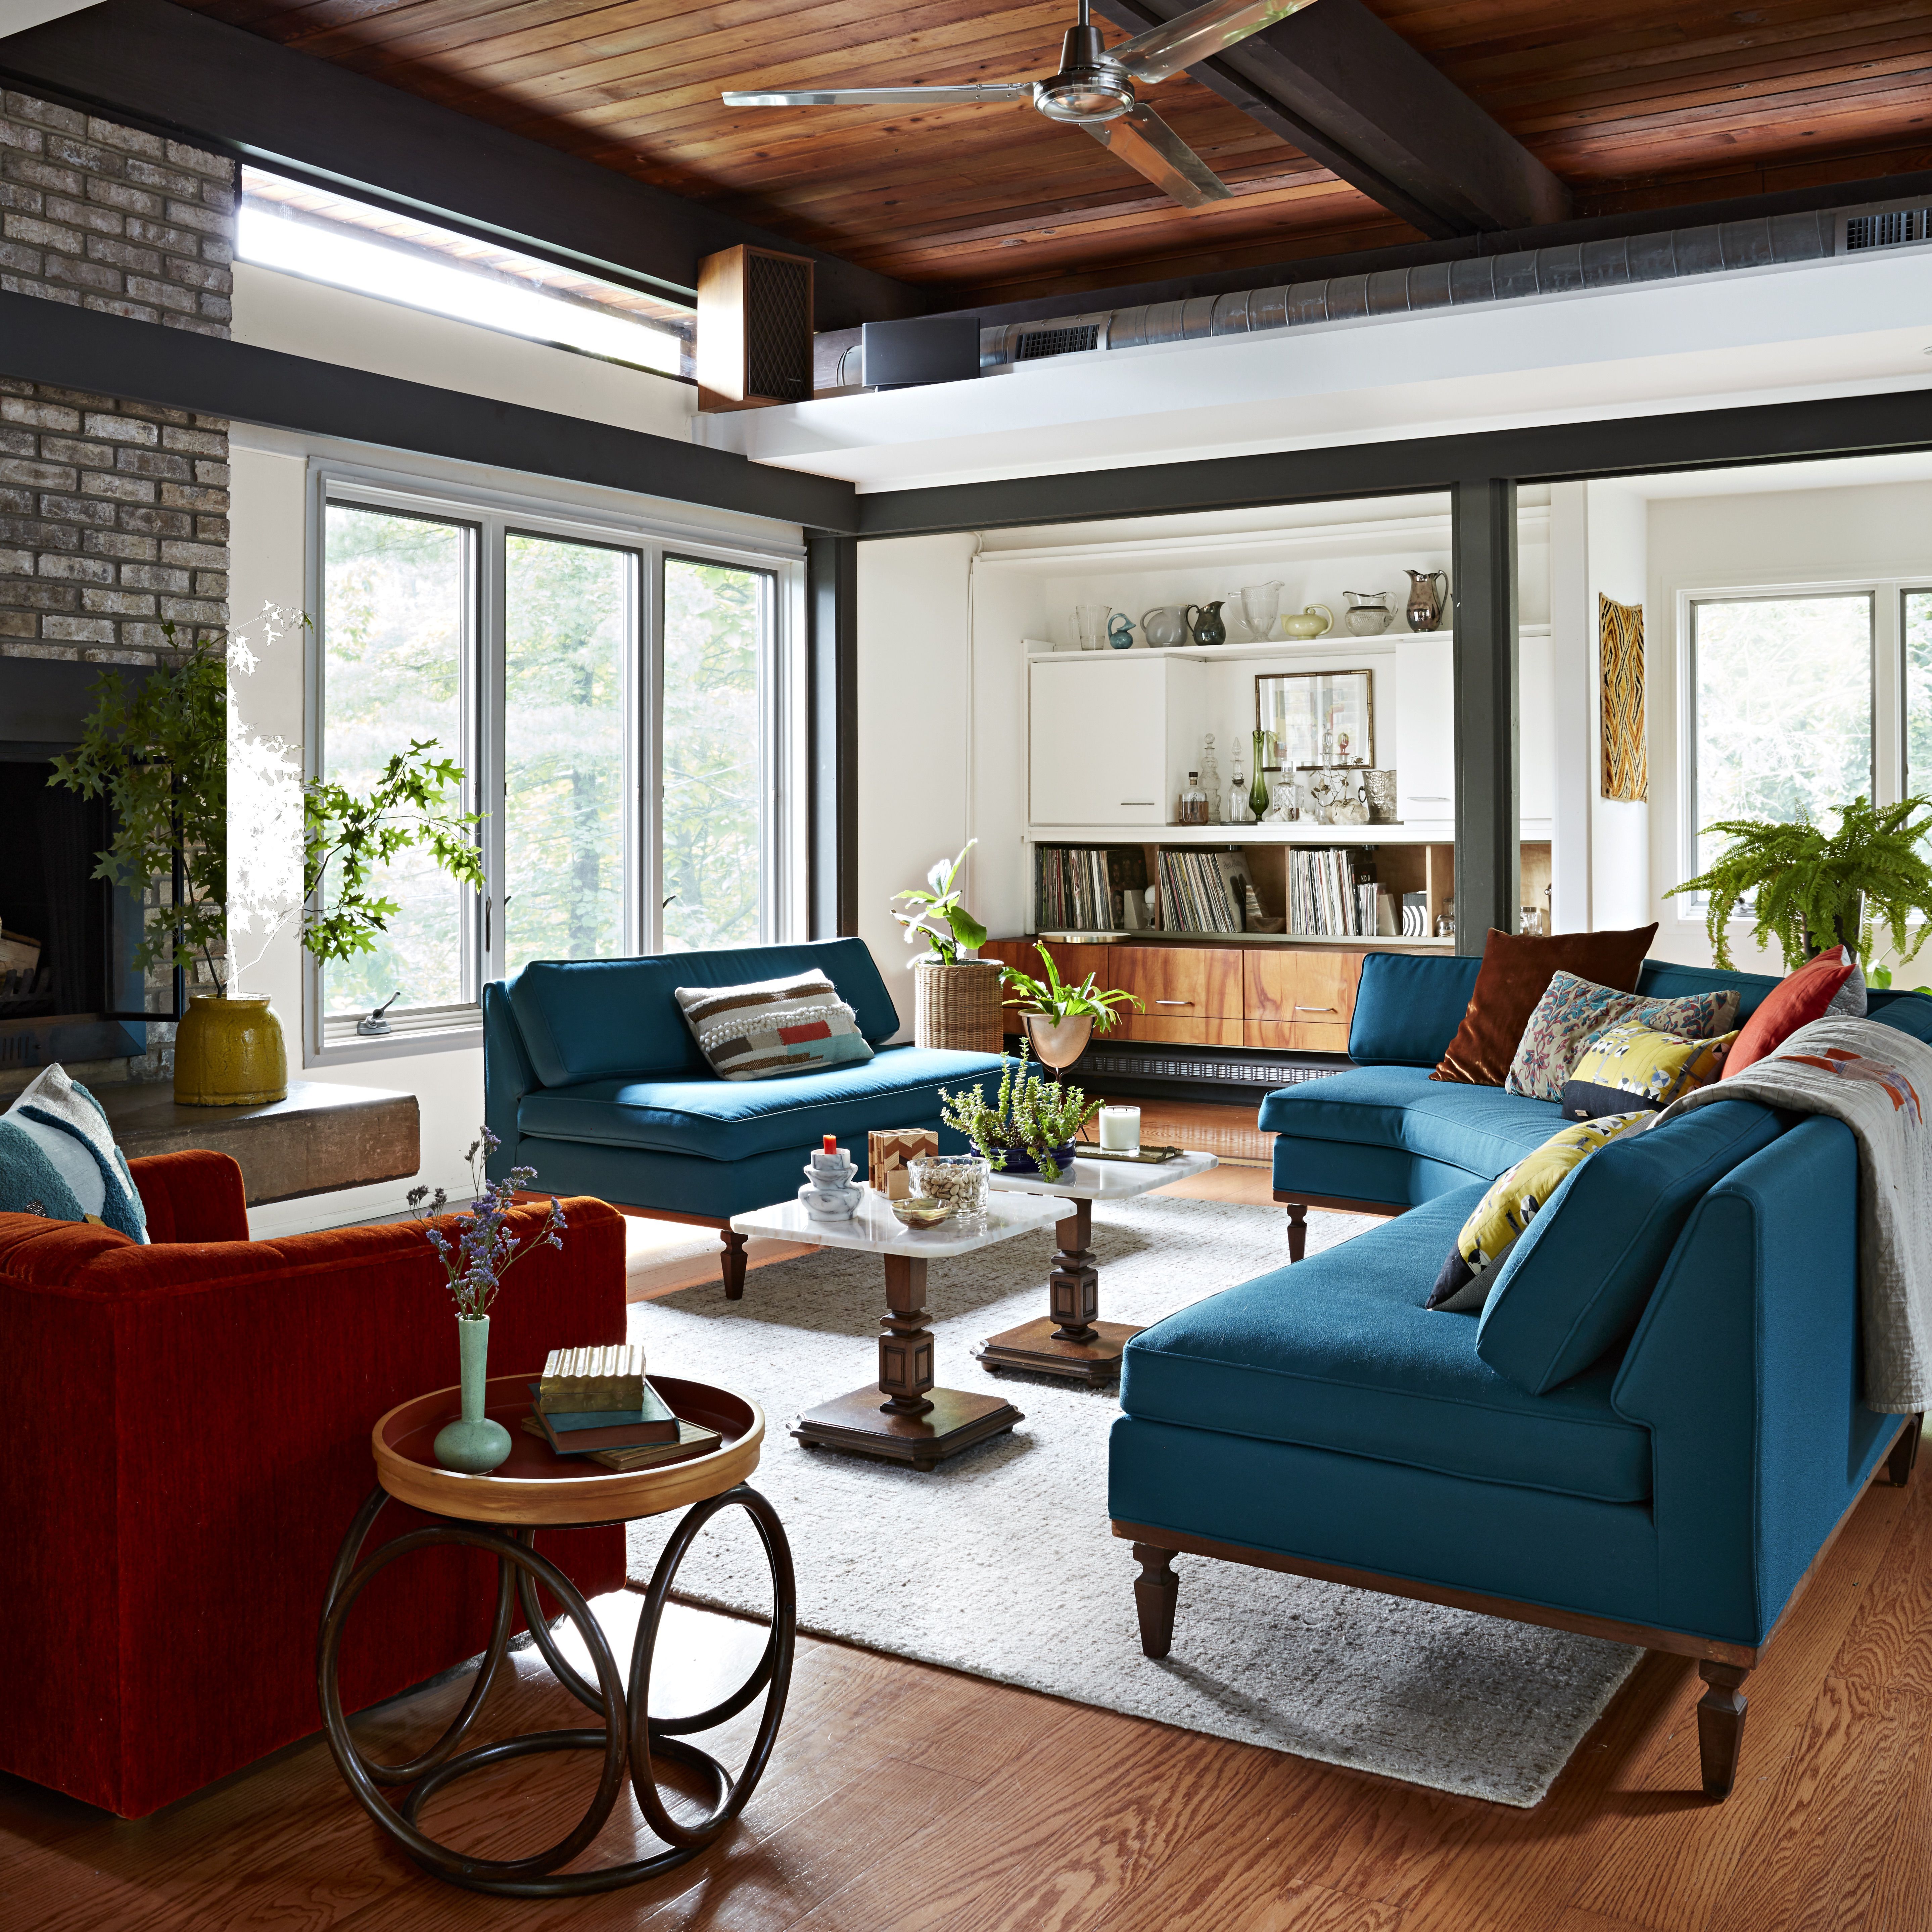 BHG Adoff House Story: sala de estar moderna de mediados de siglo con chimenea de piedra y sofás y sillas de color naranja quemado y verde azulado